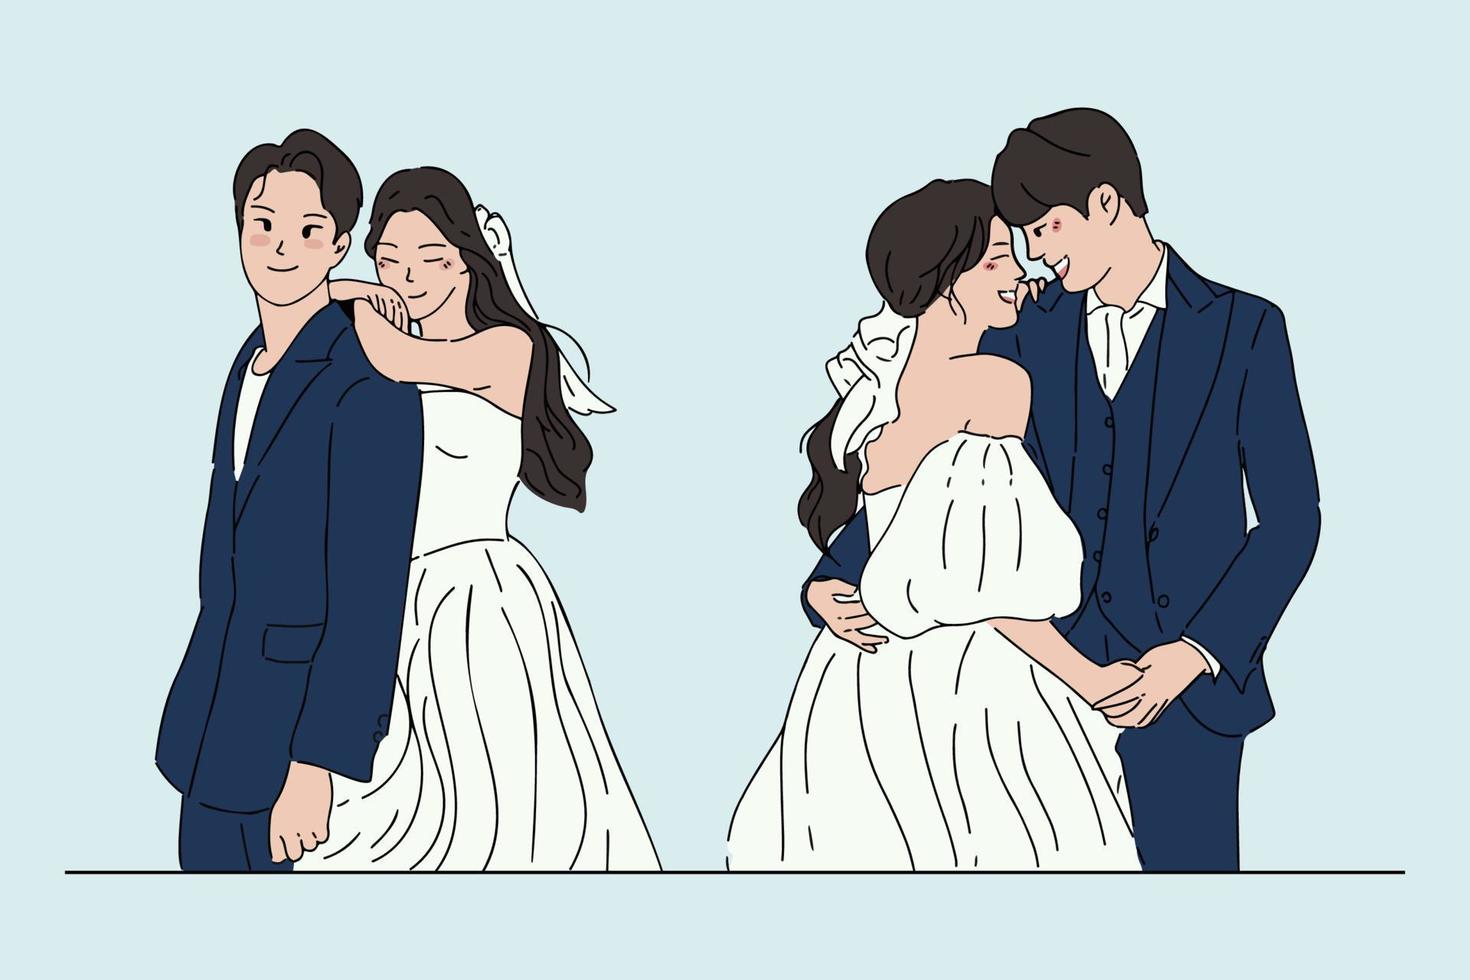 illustrazioni di disegno vettoriale di stile disegnato a mano di sposi.